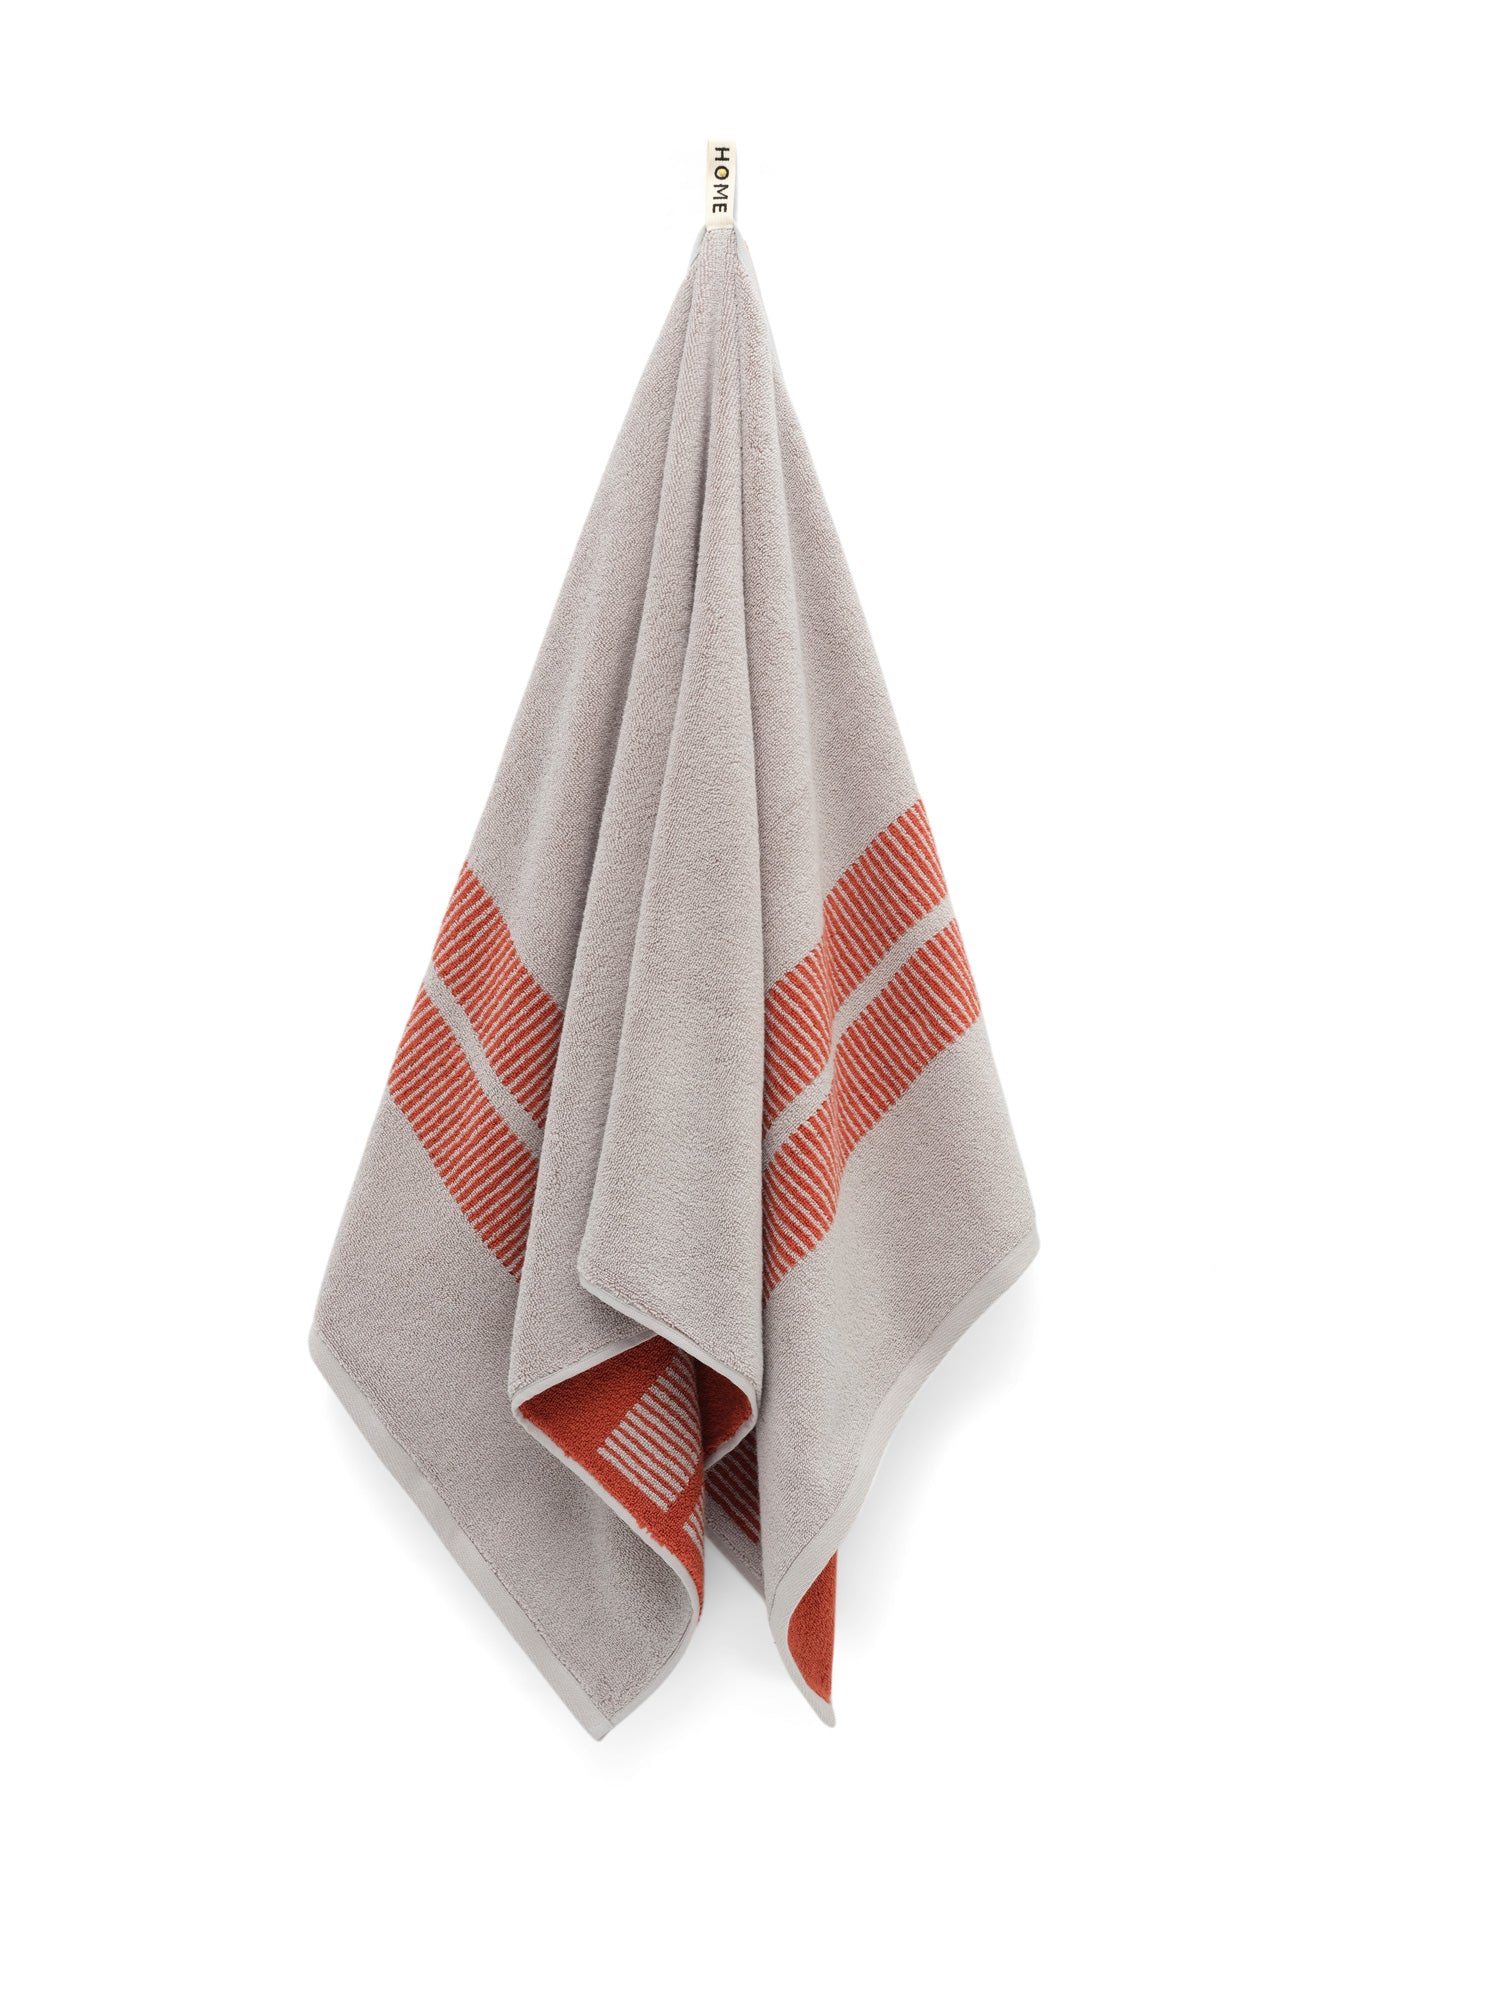 Bath Towel - Terracotta/Stone - Dual Dash